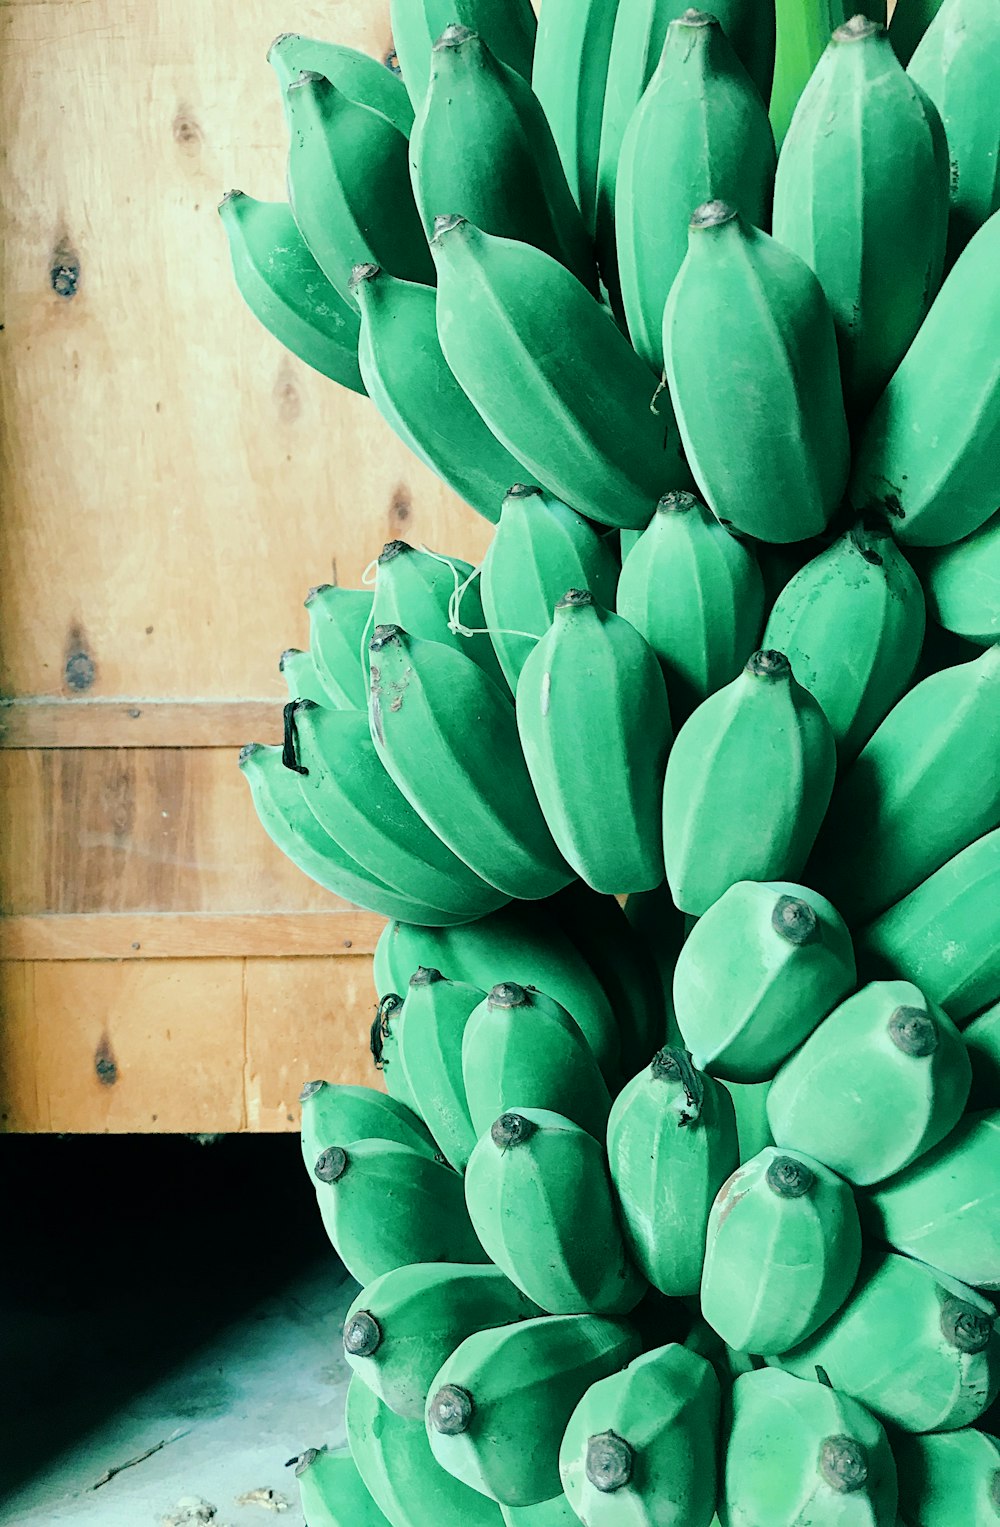 green banana